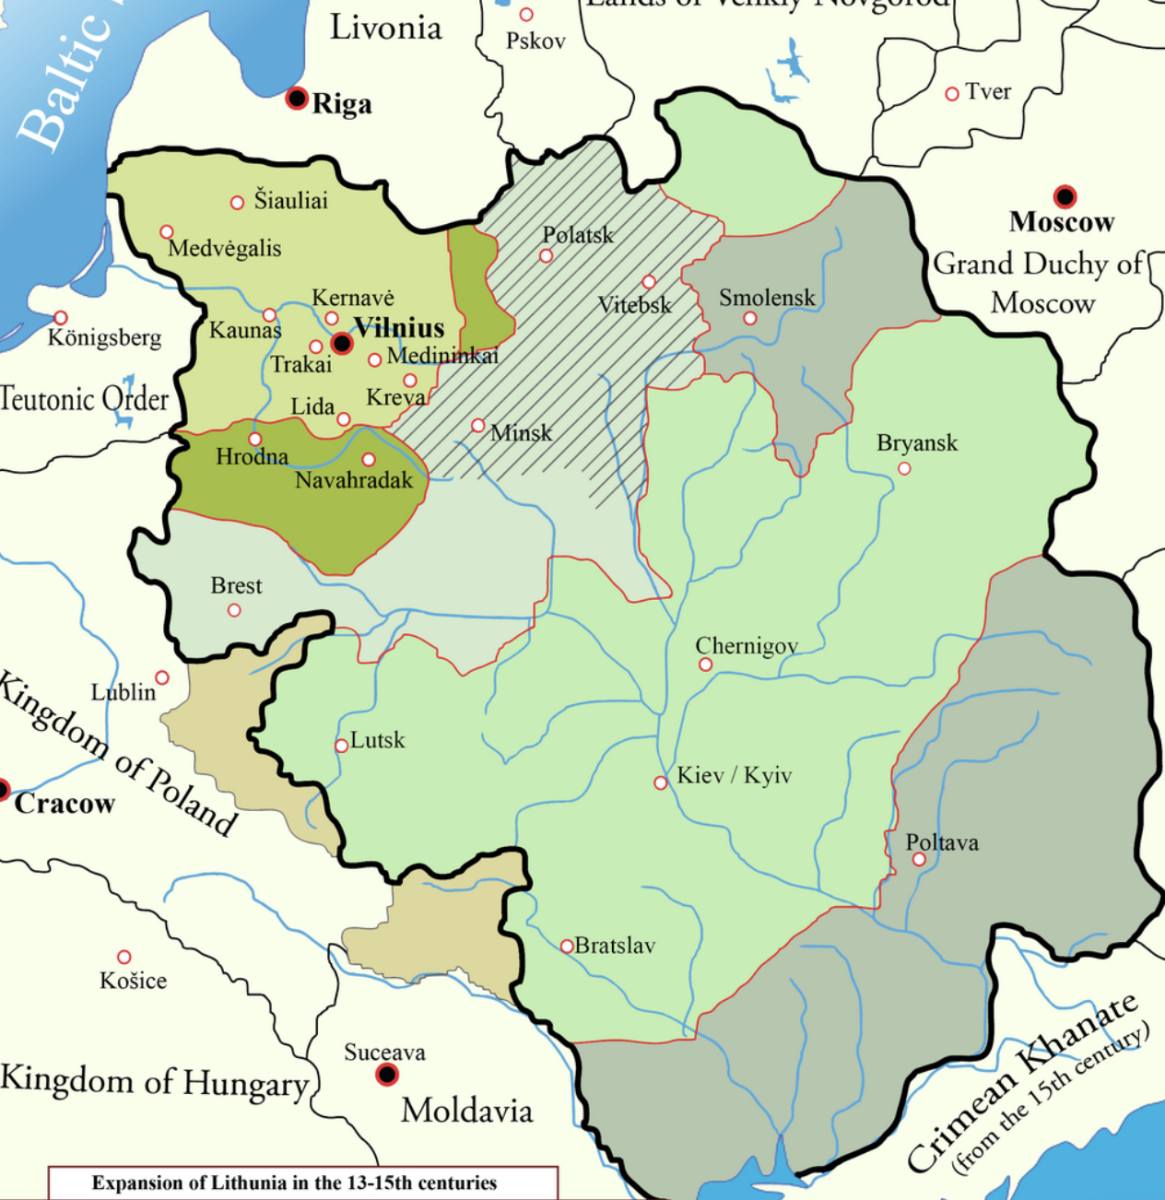 Литва на карте 15 век. Карта Литвы 15 века. Великое княжество Литовское 13-15 века карта. Литва в 14 веке карта.